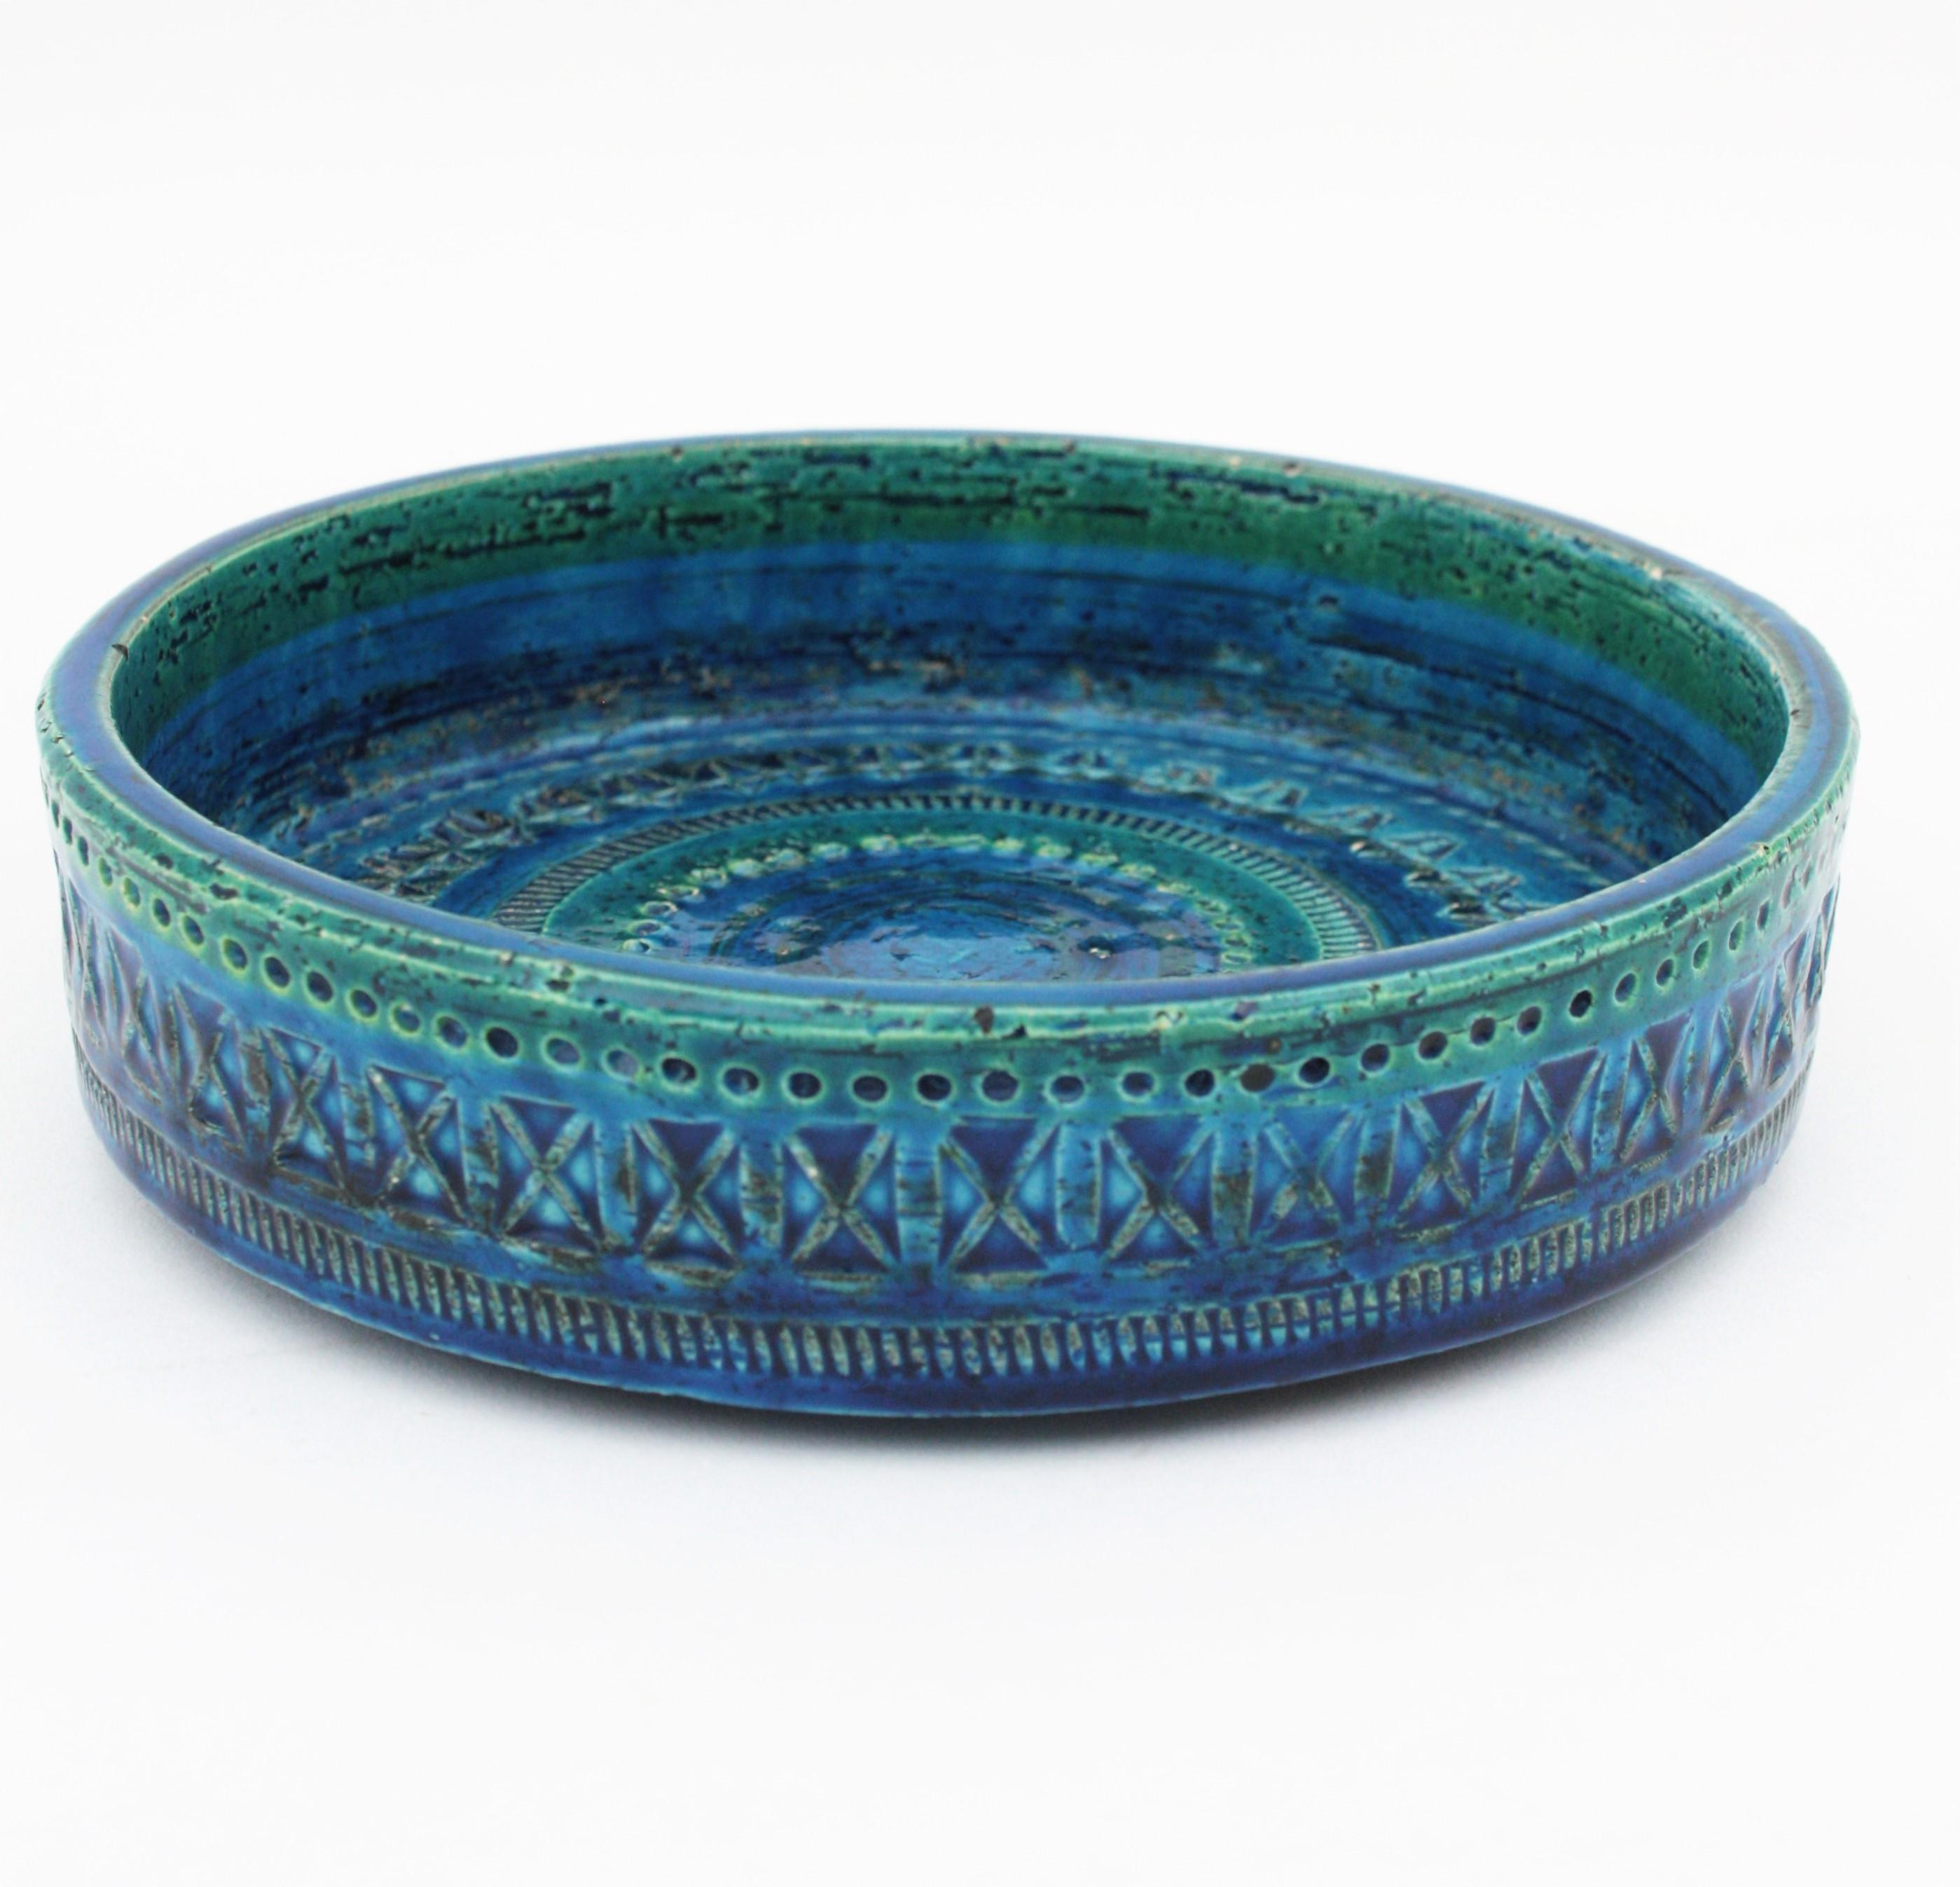 Italian Bitossi Aldo Londi Rimini Blue Glazed Ceramic Circular Bowl, Italy, 1950s For Sale